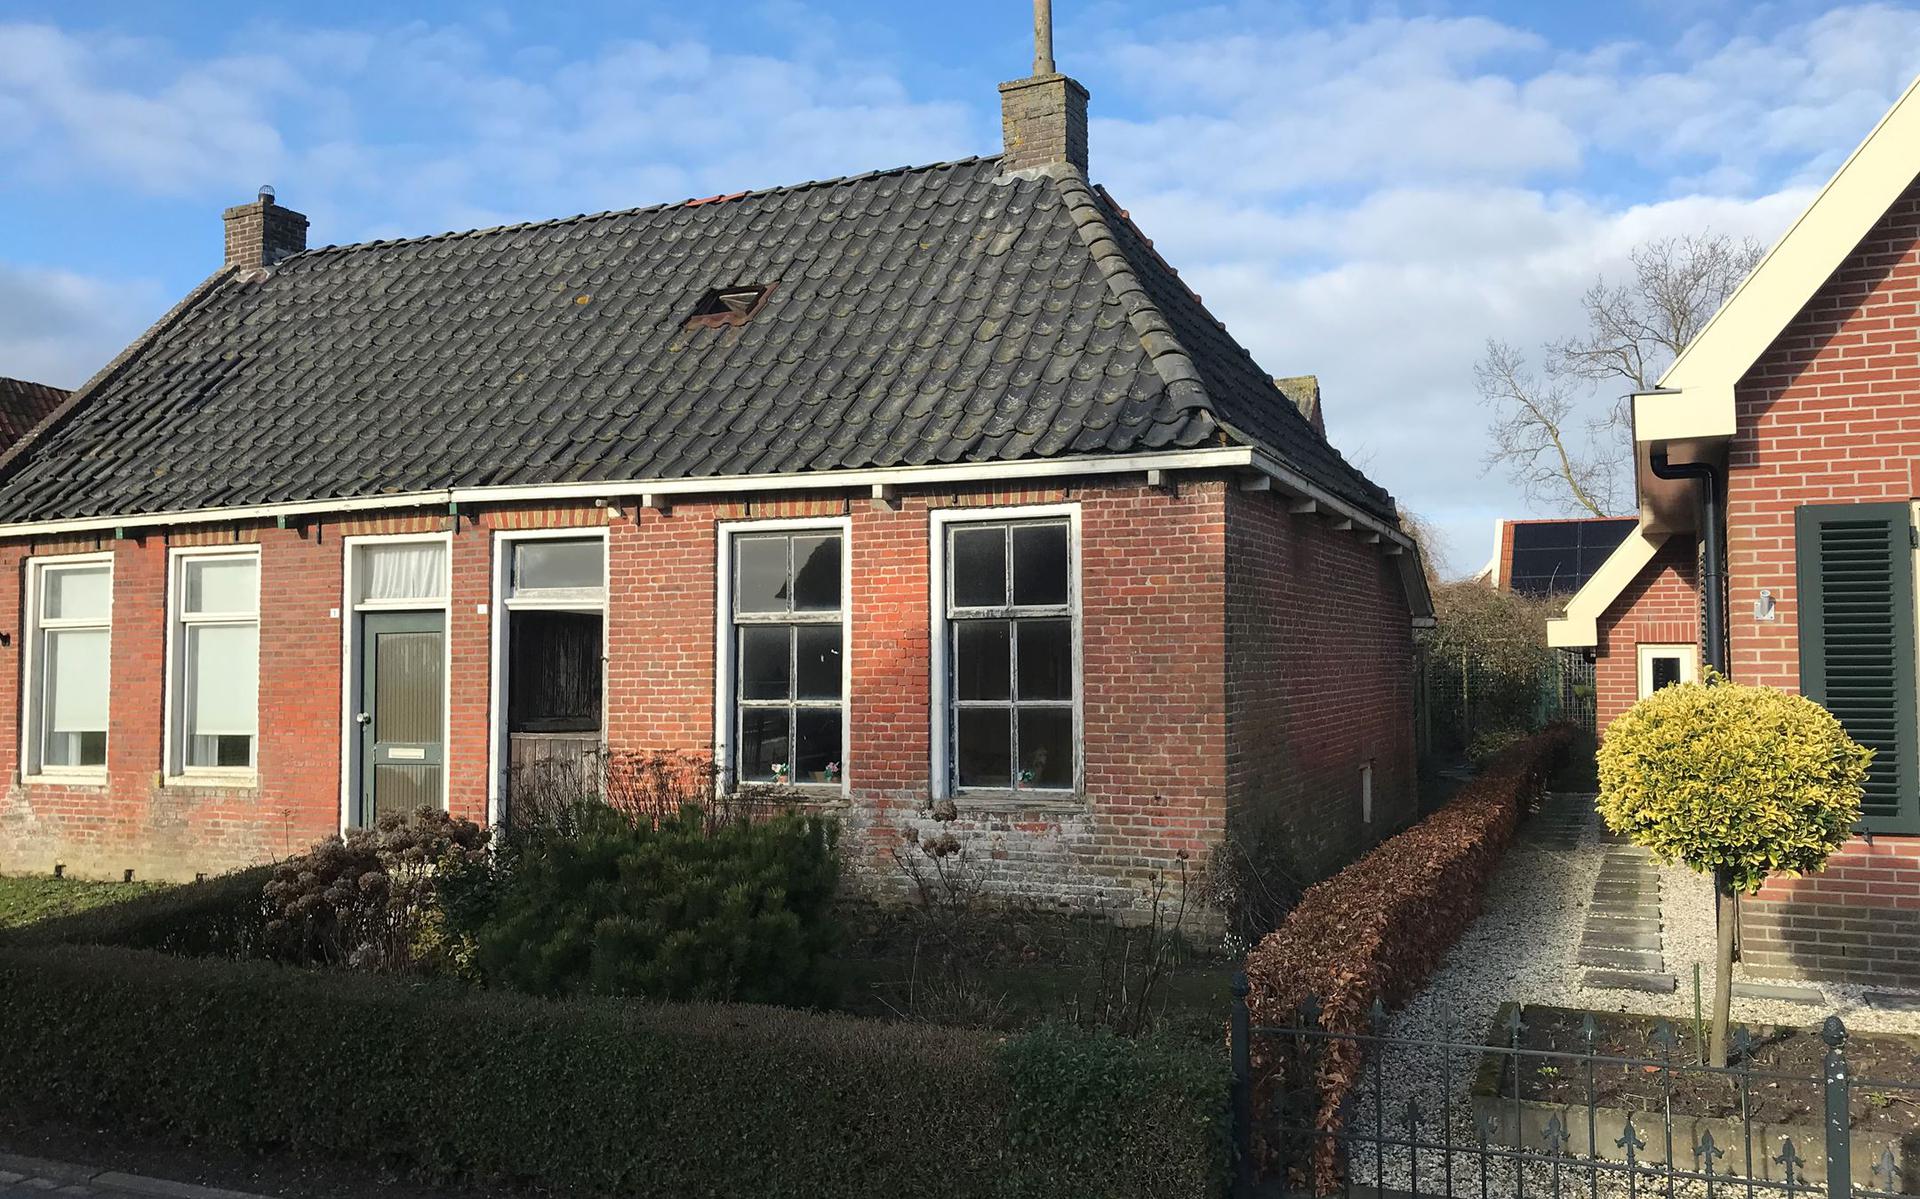 Lam nauwelijks opzettelijk Uitzonderlijk: huisje voor 50.000 euro te koop in Nes - Leeuwarder Courant